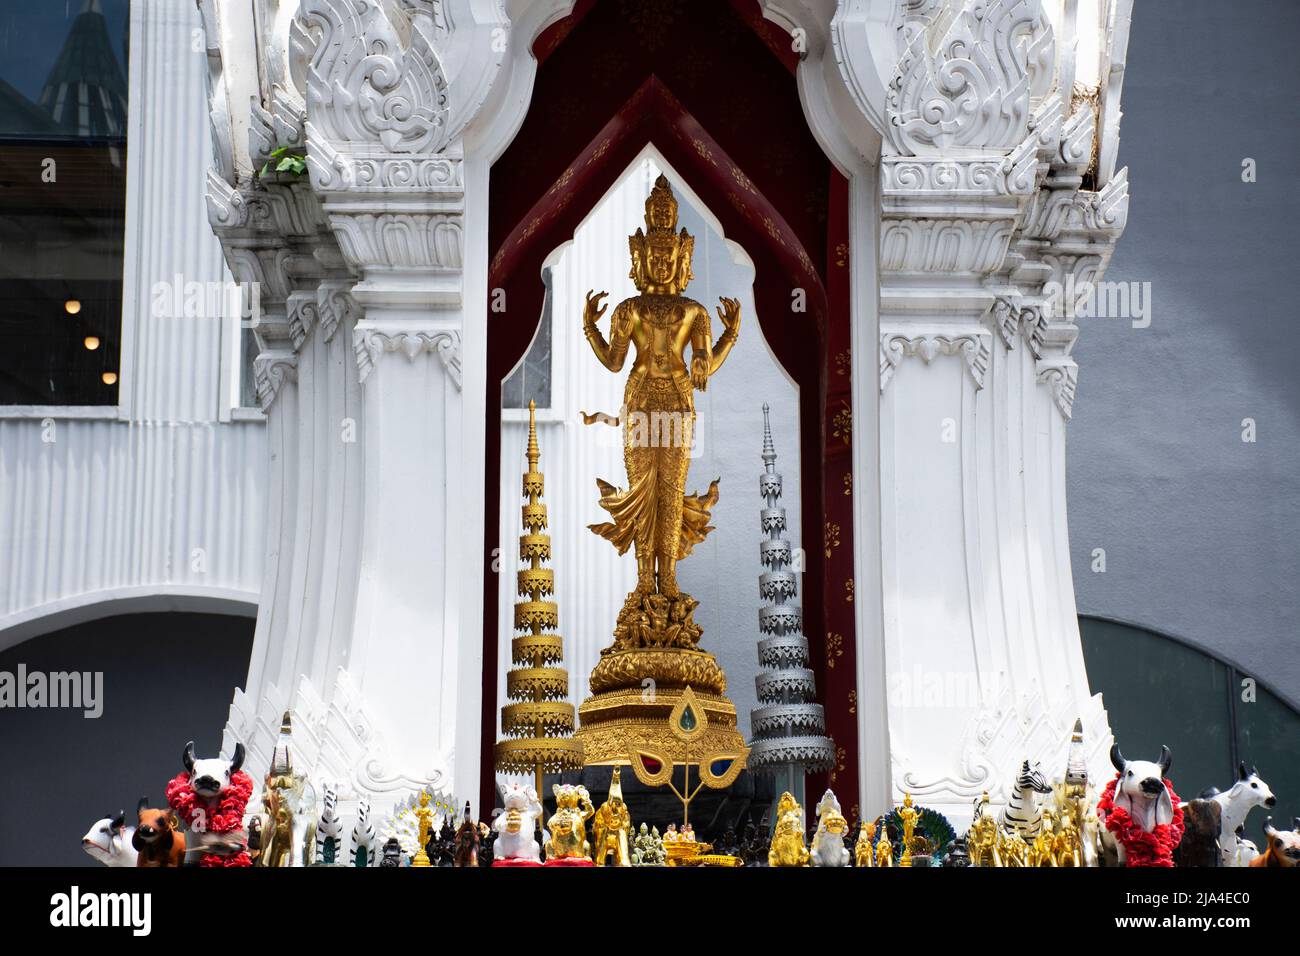 Alte trimurti gott-Statue oder lord Supreme trinity Figur in Schrein für thailänder Reisende reisen Besuch und respektieren Segen heilig auf der Terrasse beten Stockfoto